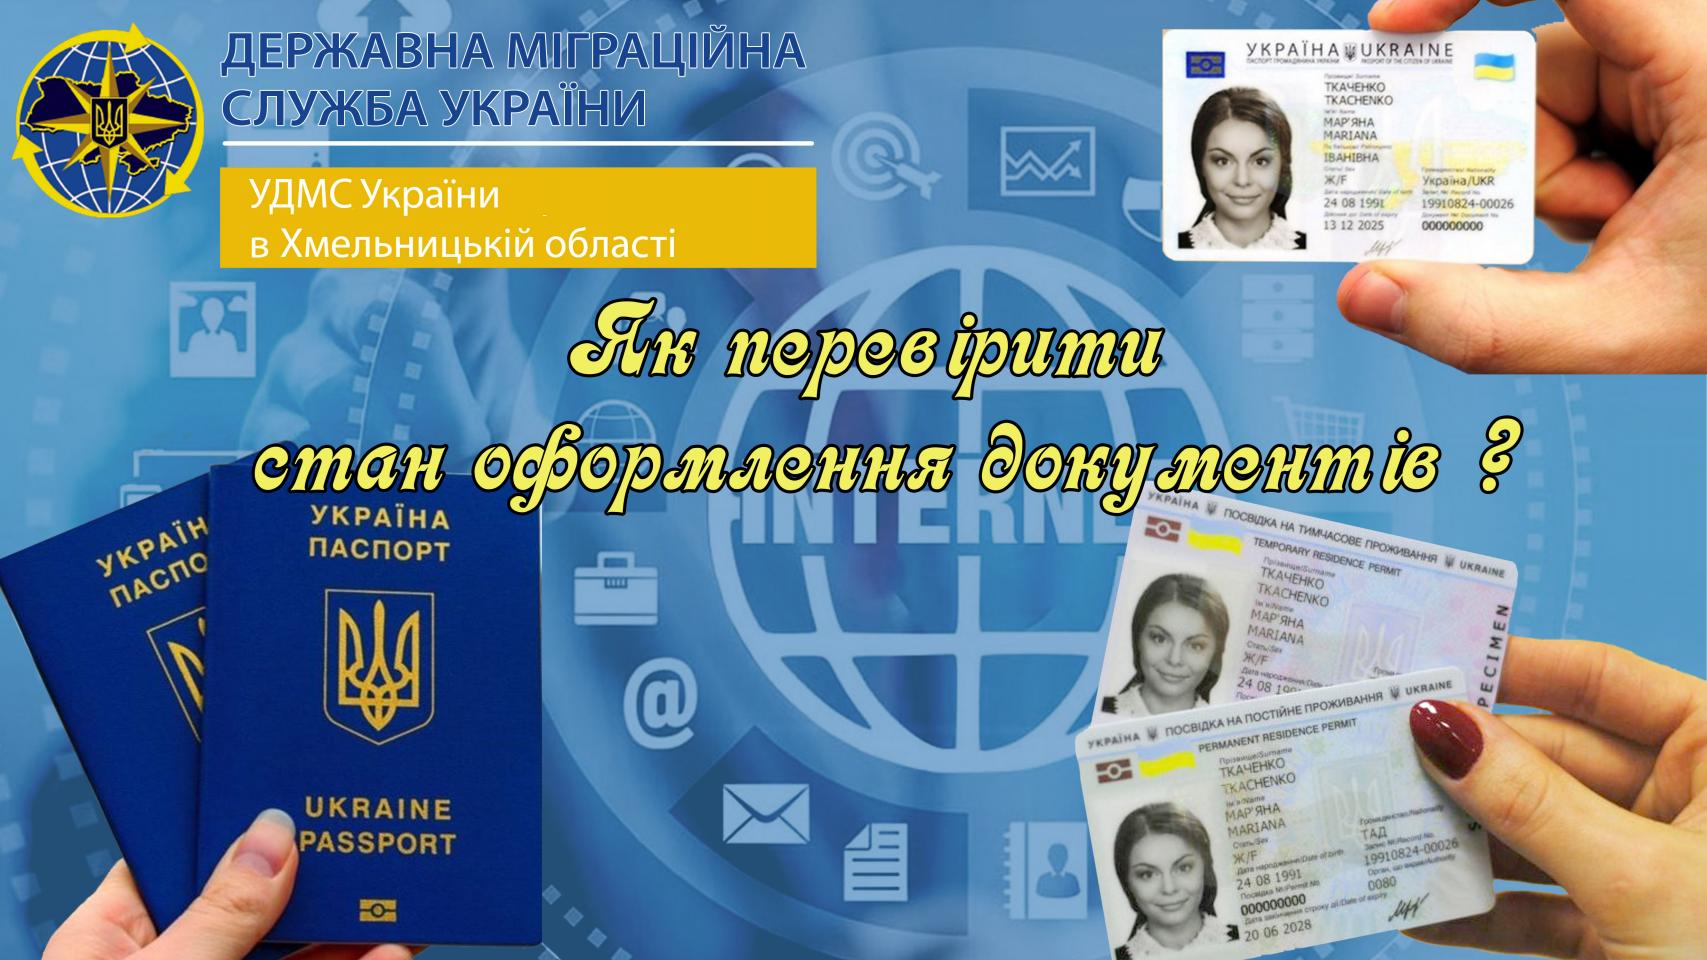 http://dunrada.gov.ua/uploadfile/archive_news/2021/02/11/2021-02-11_8494/images/images-25182.jpg